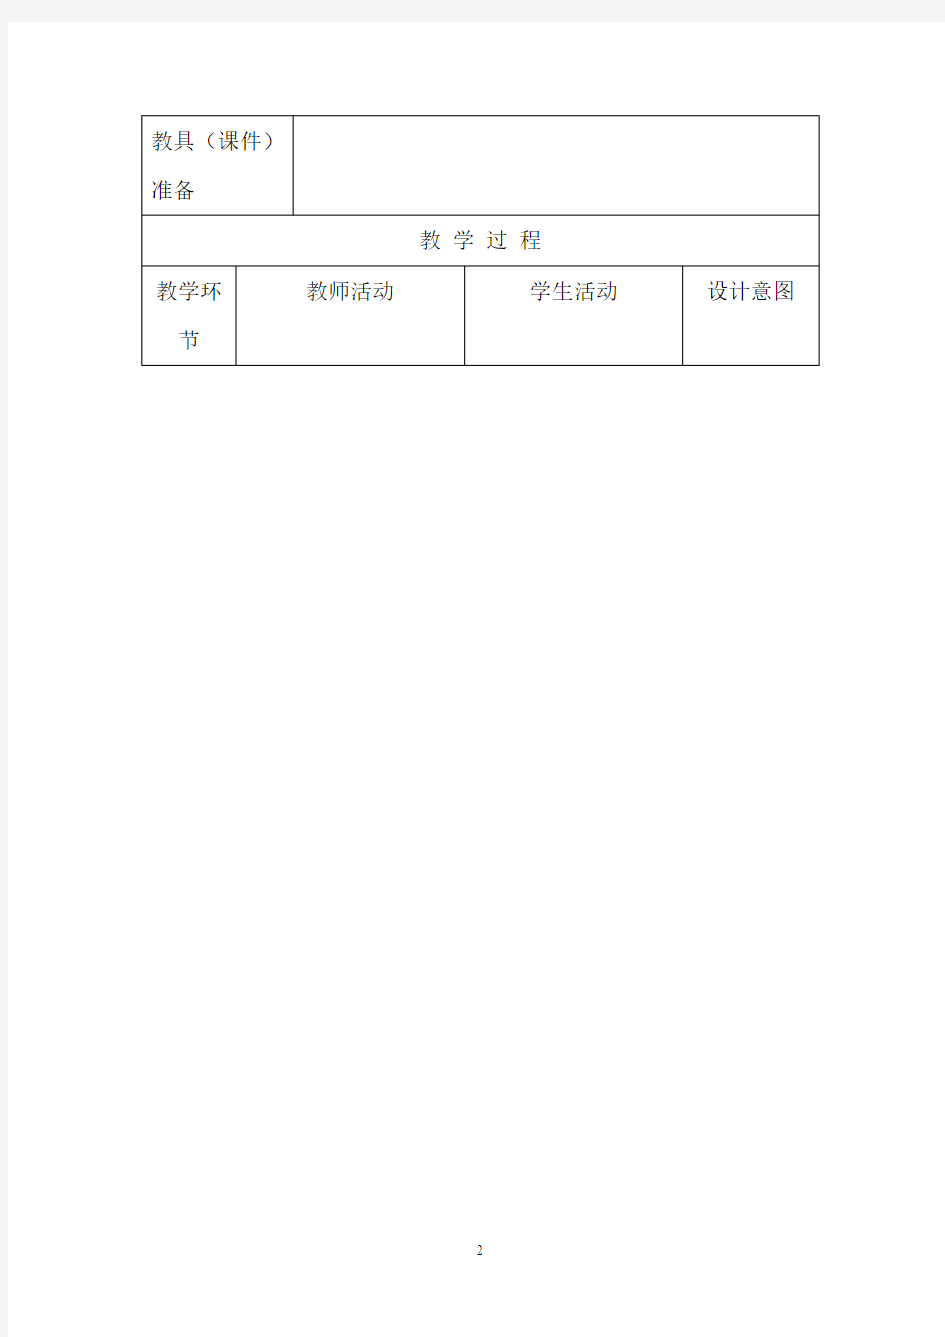 【北京市】三年级中小学专题综合教材教案